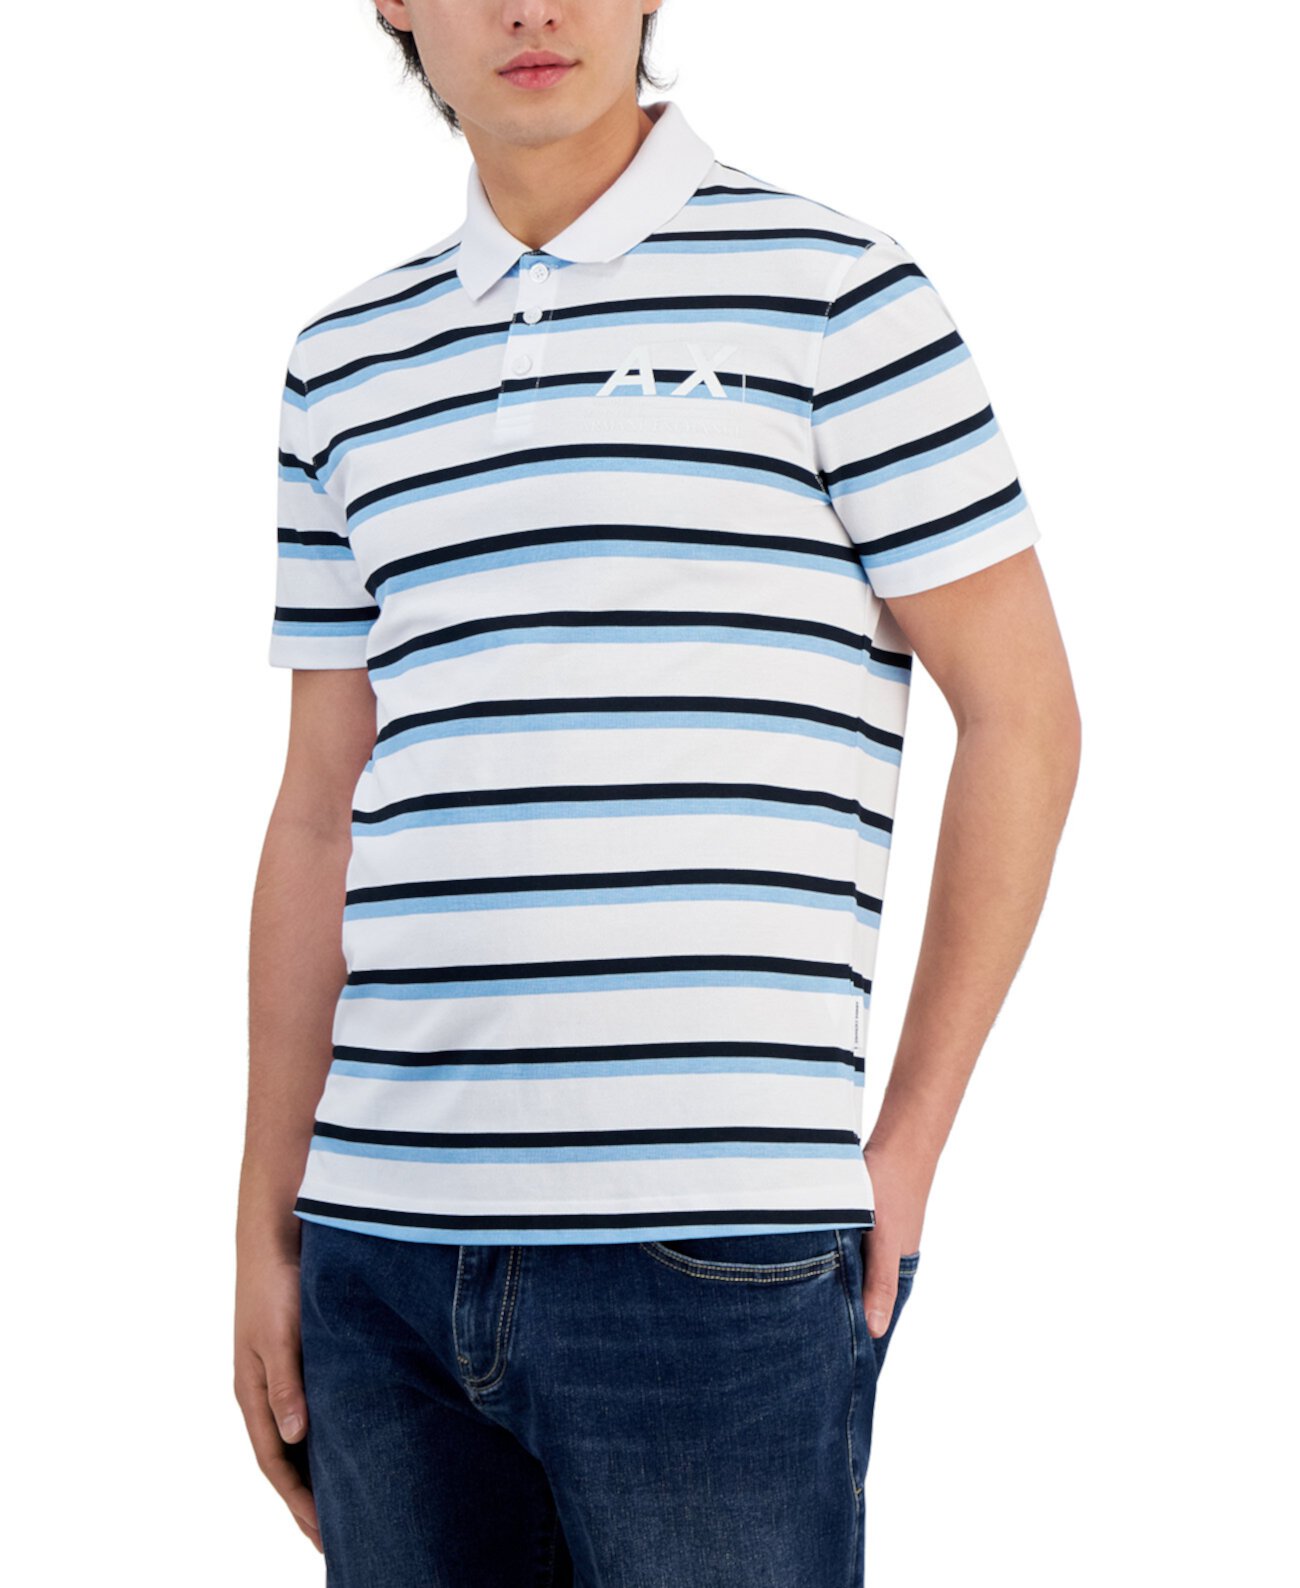 Мужская рубашка-поло в полоску, созданная для Macy's Armani